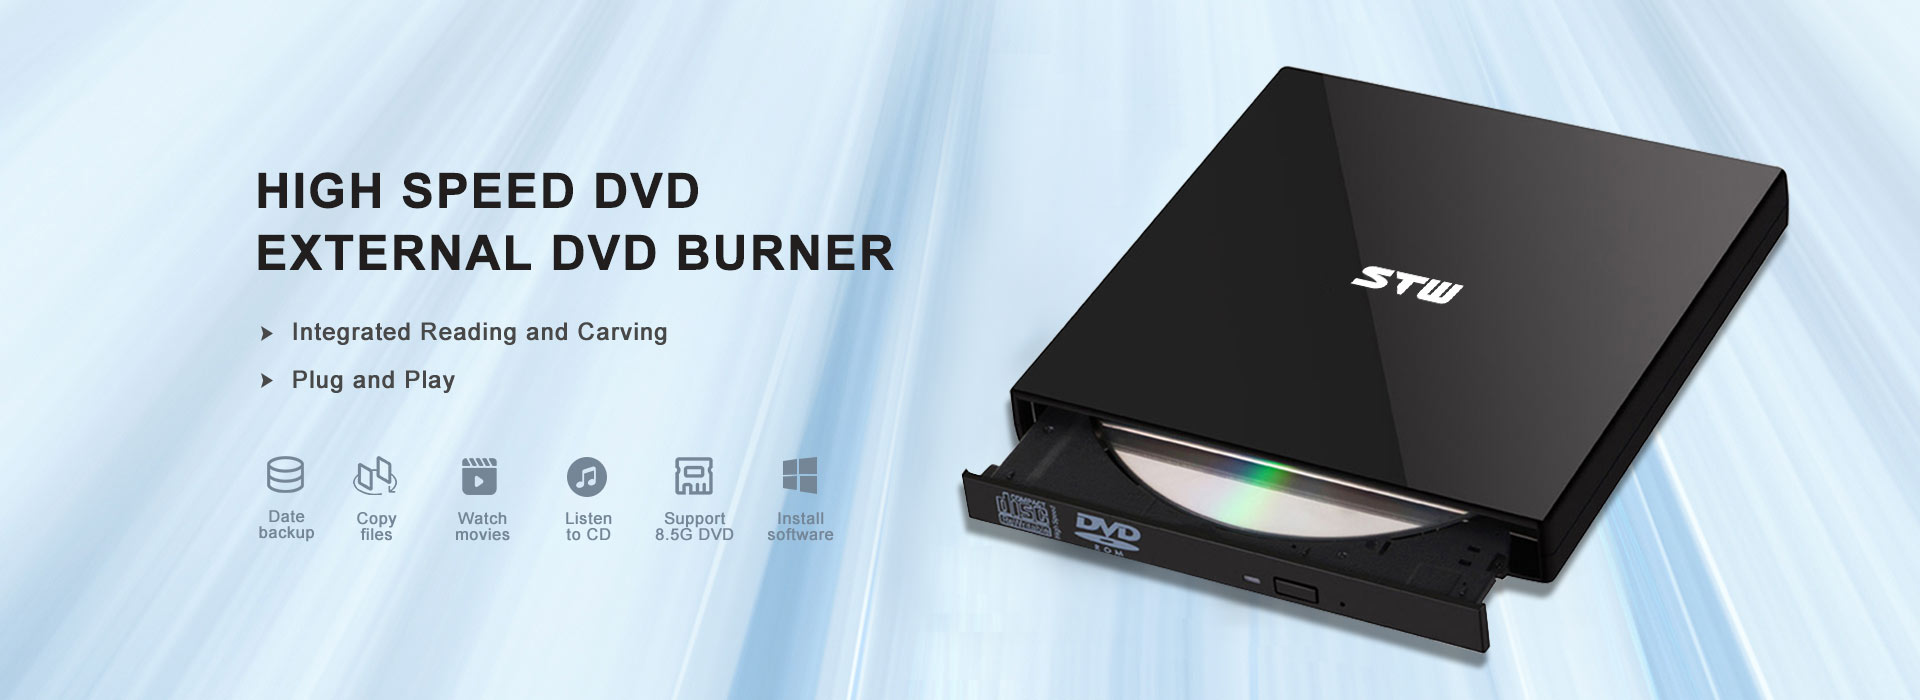 External DVD Drive